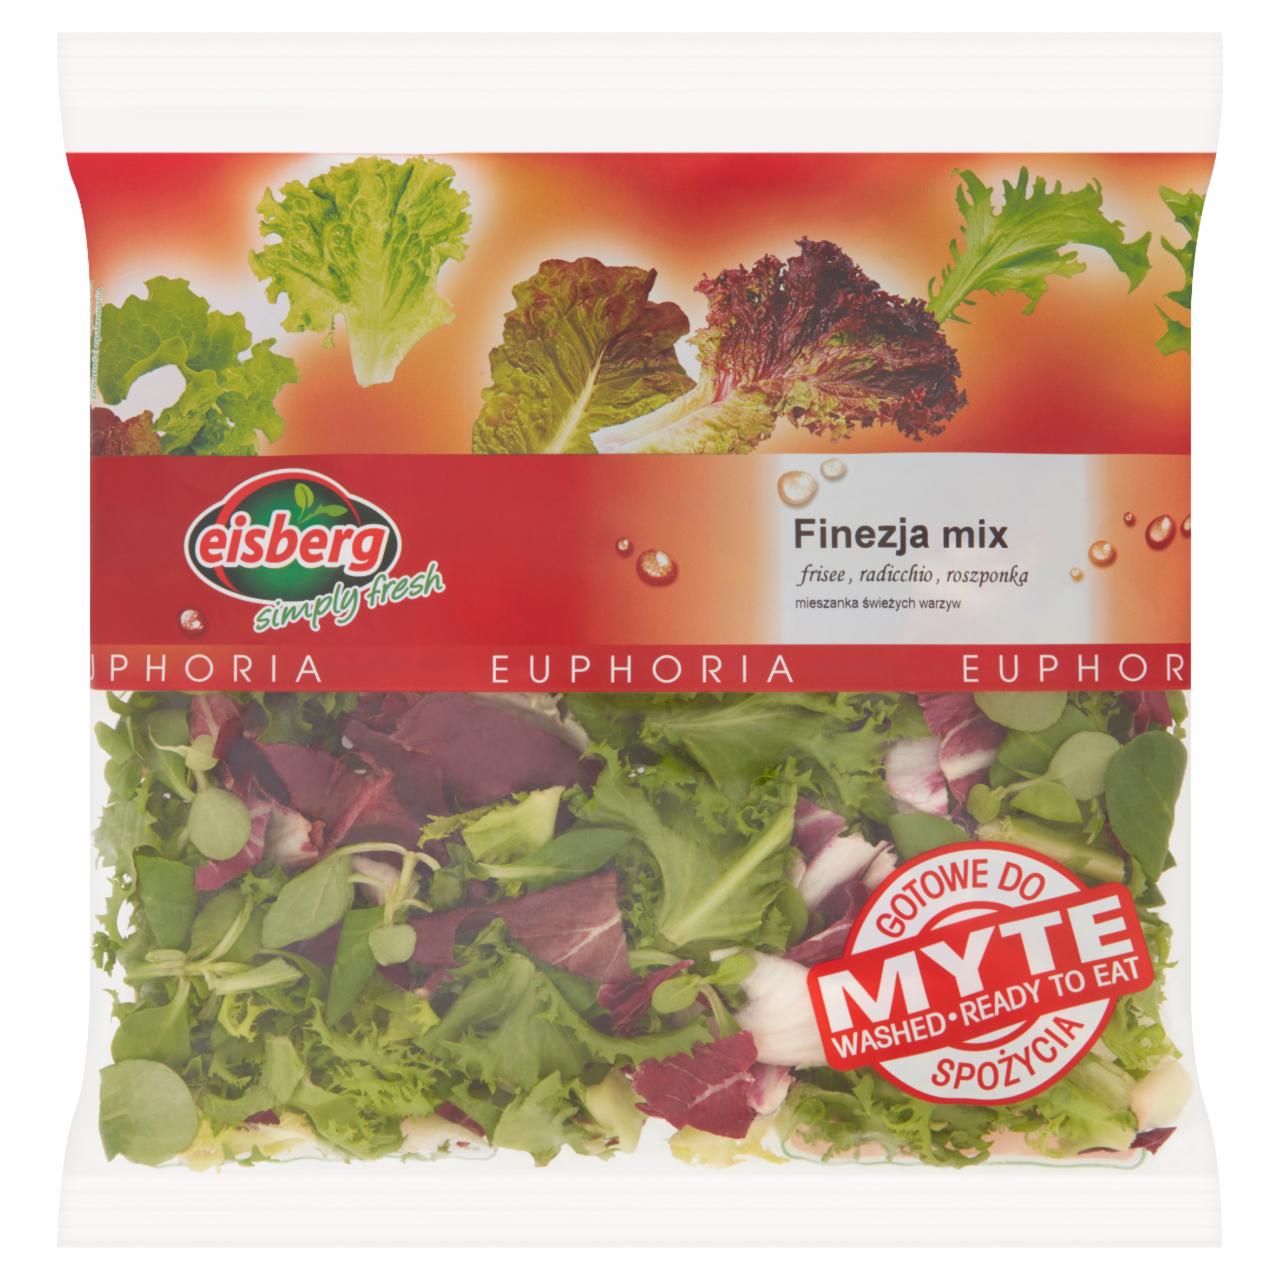 Zdjęcia - Eisberg Euphoria Finezja mix Mieszanka świeżych warzyw 160 g